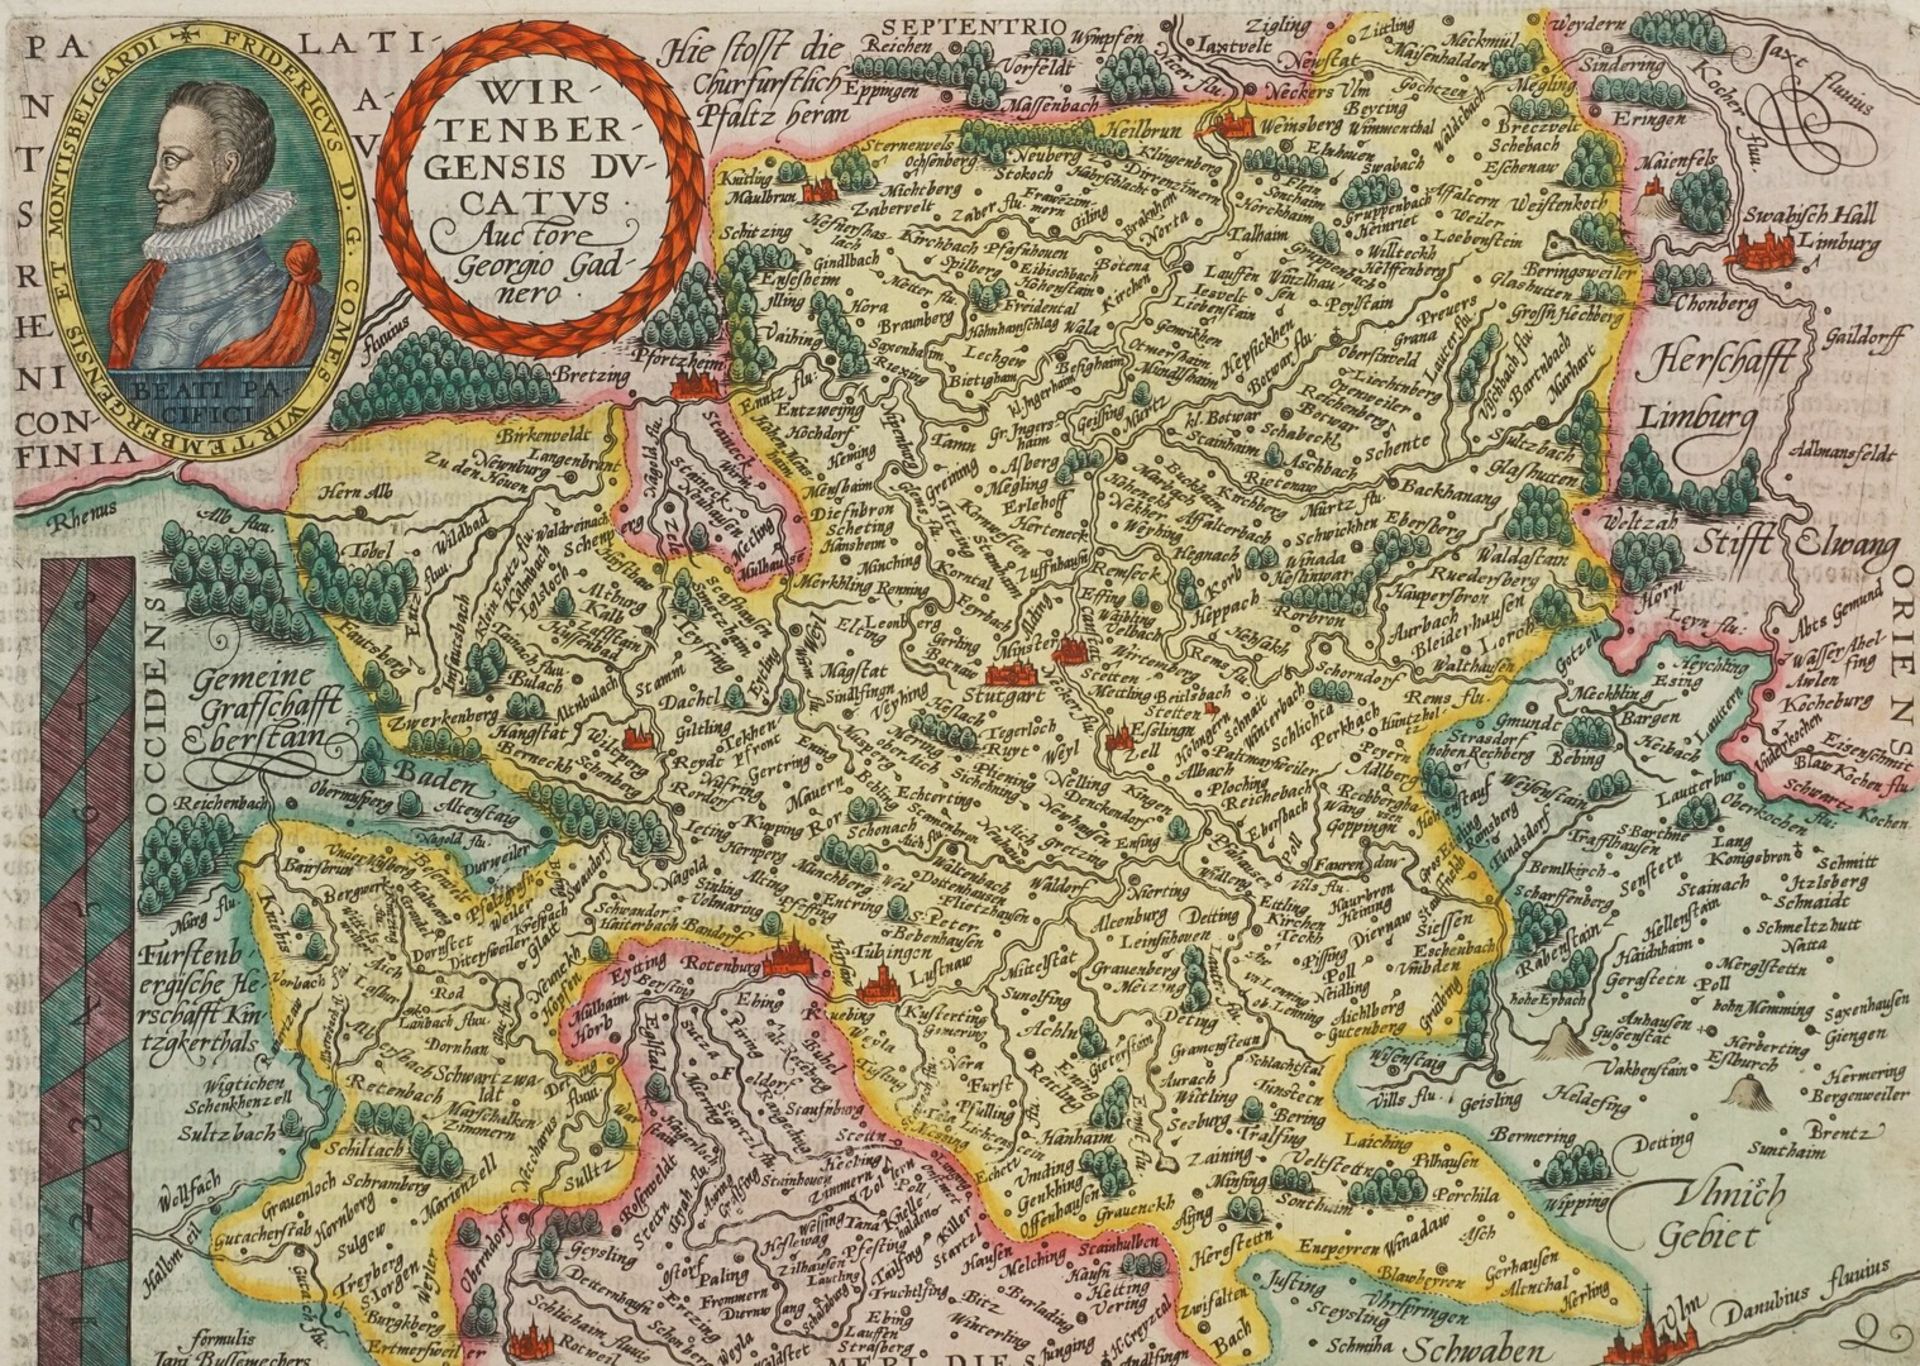 Mat(t)hias Quad, "Wirtenbergensis Ducatus" (Landkarte des Herzogtums Württemberg)